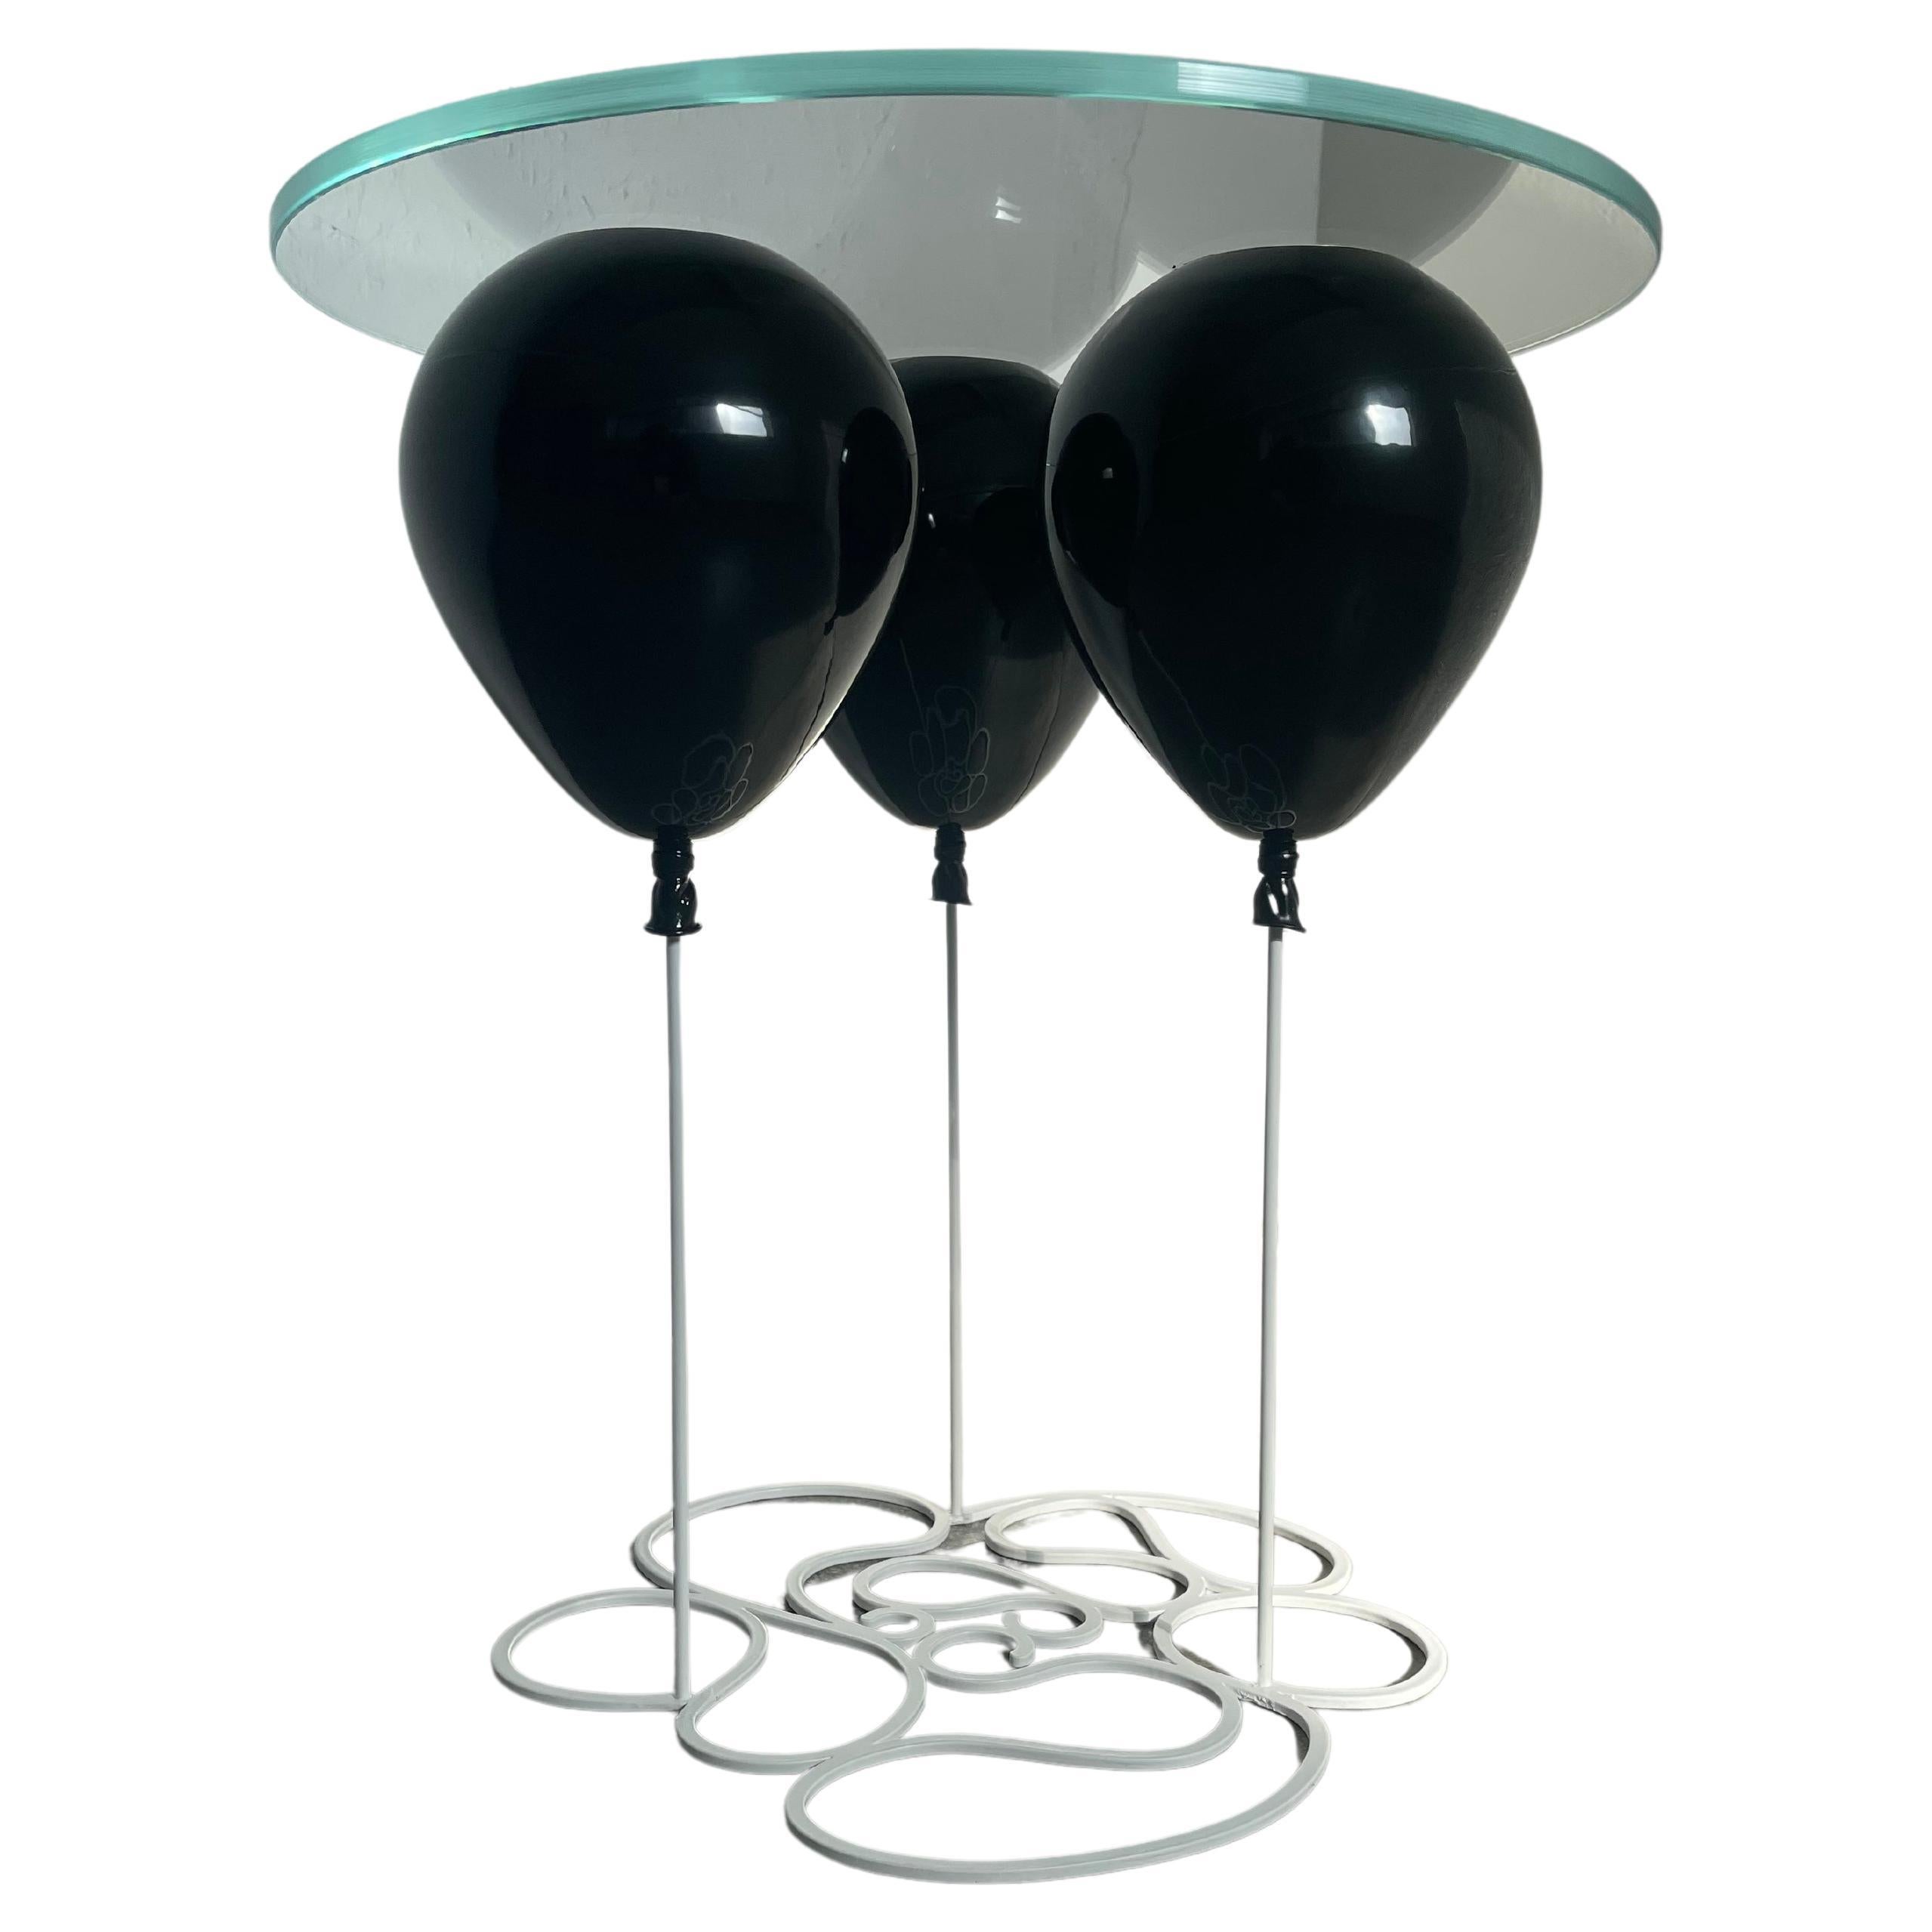 Petite table d'appoint ronde en forme de ballon, en acier inoxydable et verre en noir